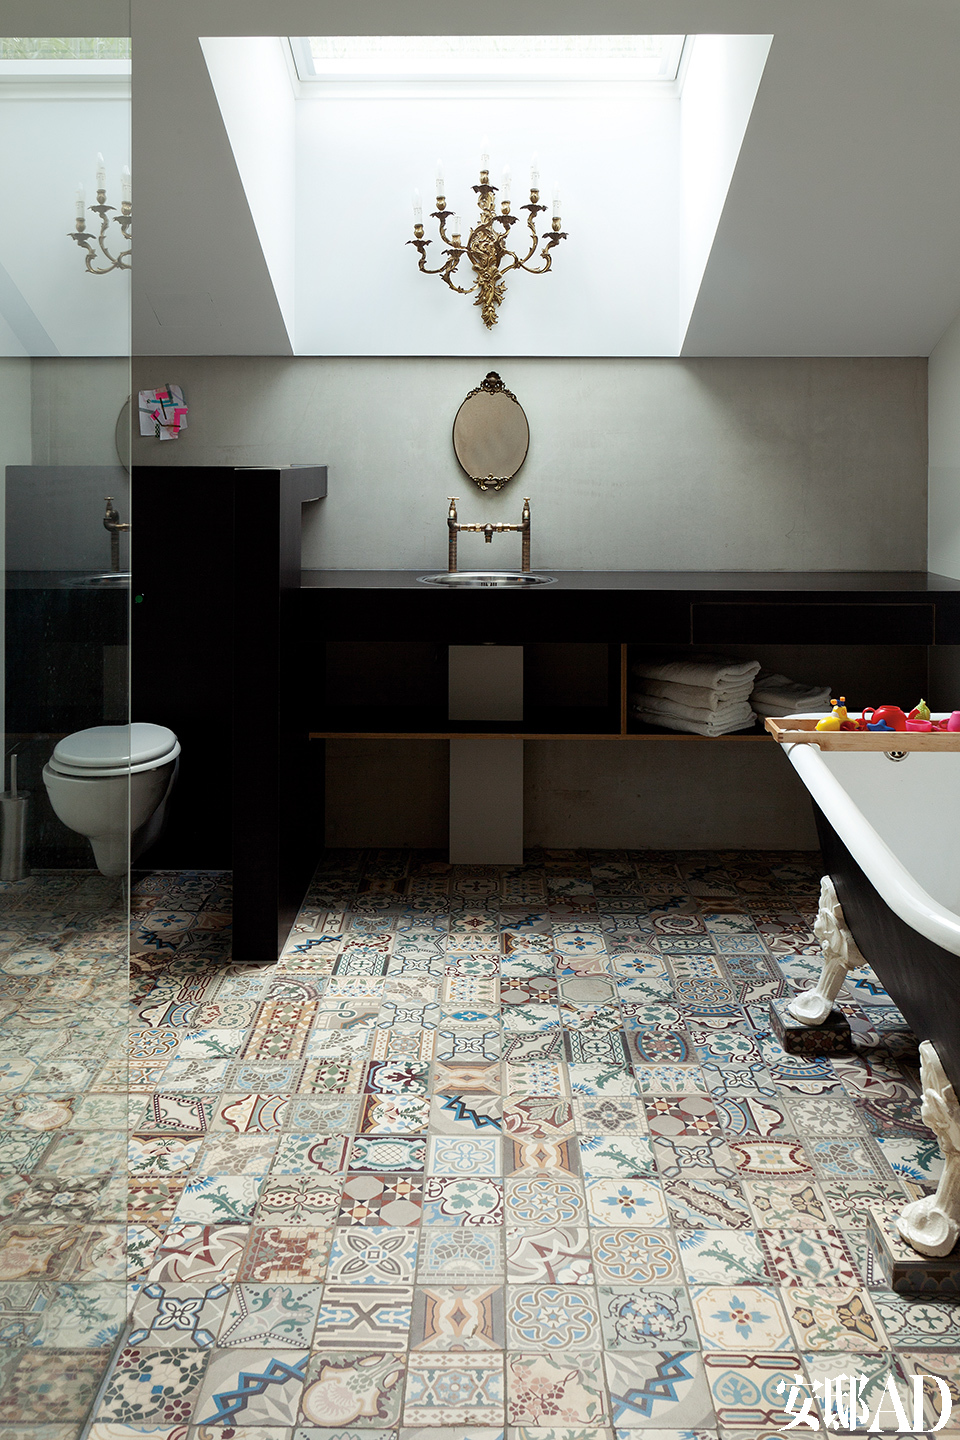 水泥混凝土元素被大量应用到每个房间，浴室也不例外，复杂的地面瓷砖与简洁的地上装饰形成对比。